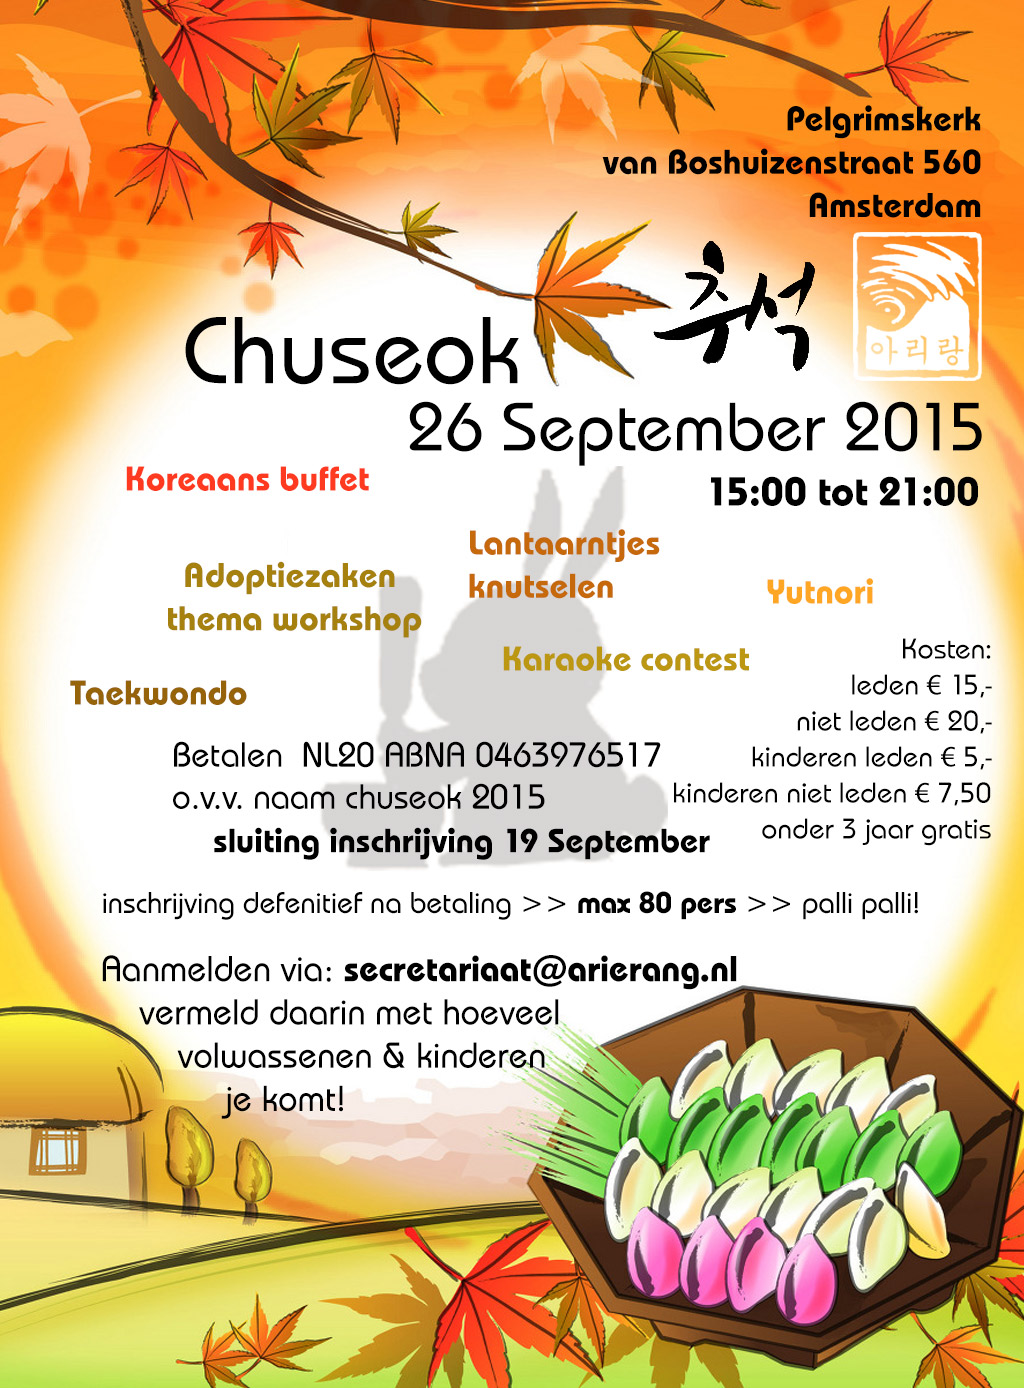 Aanmelden voor Chuseok is nog mogelijk – 5 plaatsen over